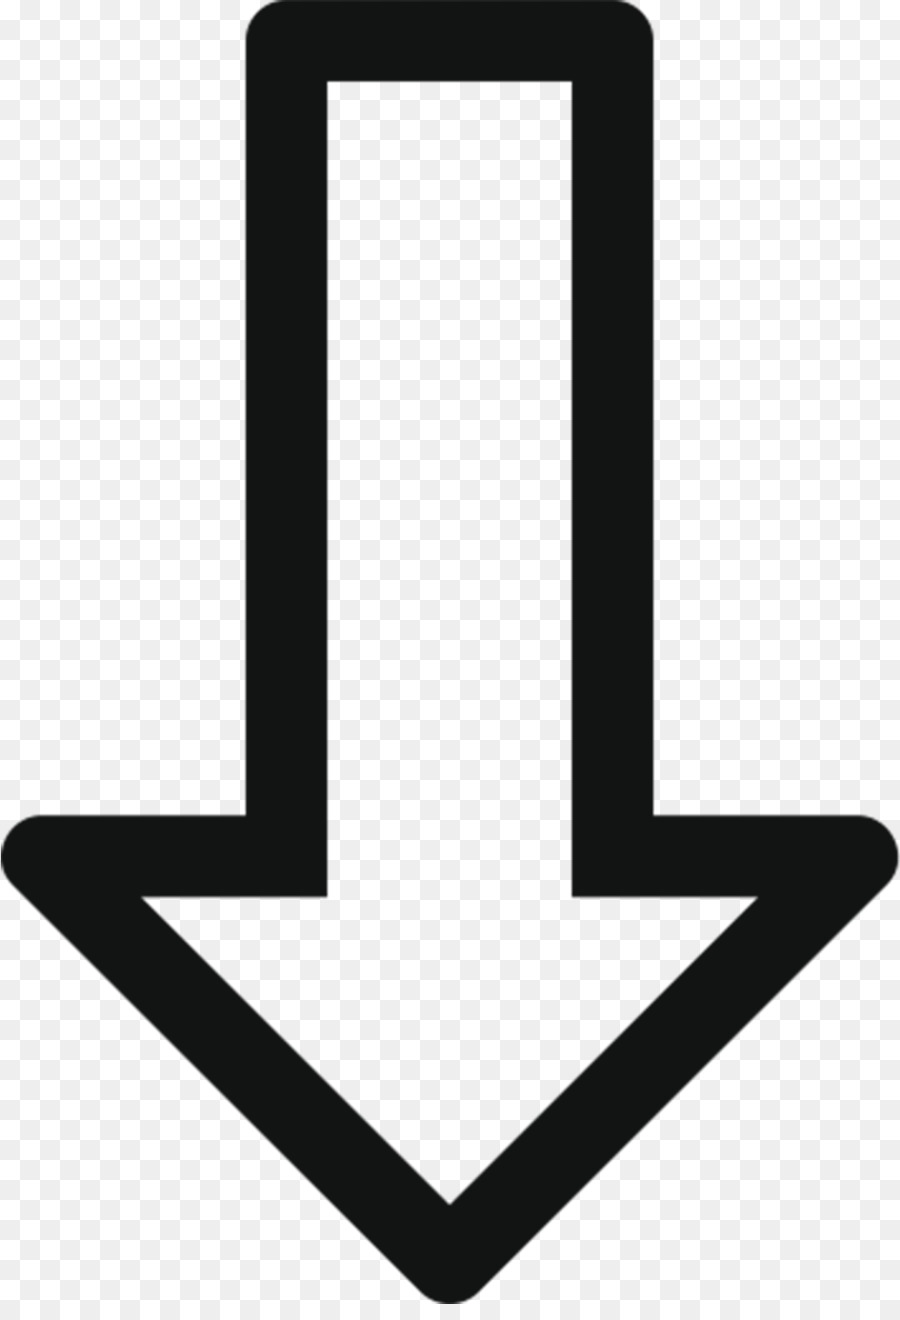 Font,Arrow,Line,Symbol,Logo,Clip art,Icon,Cold weapon